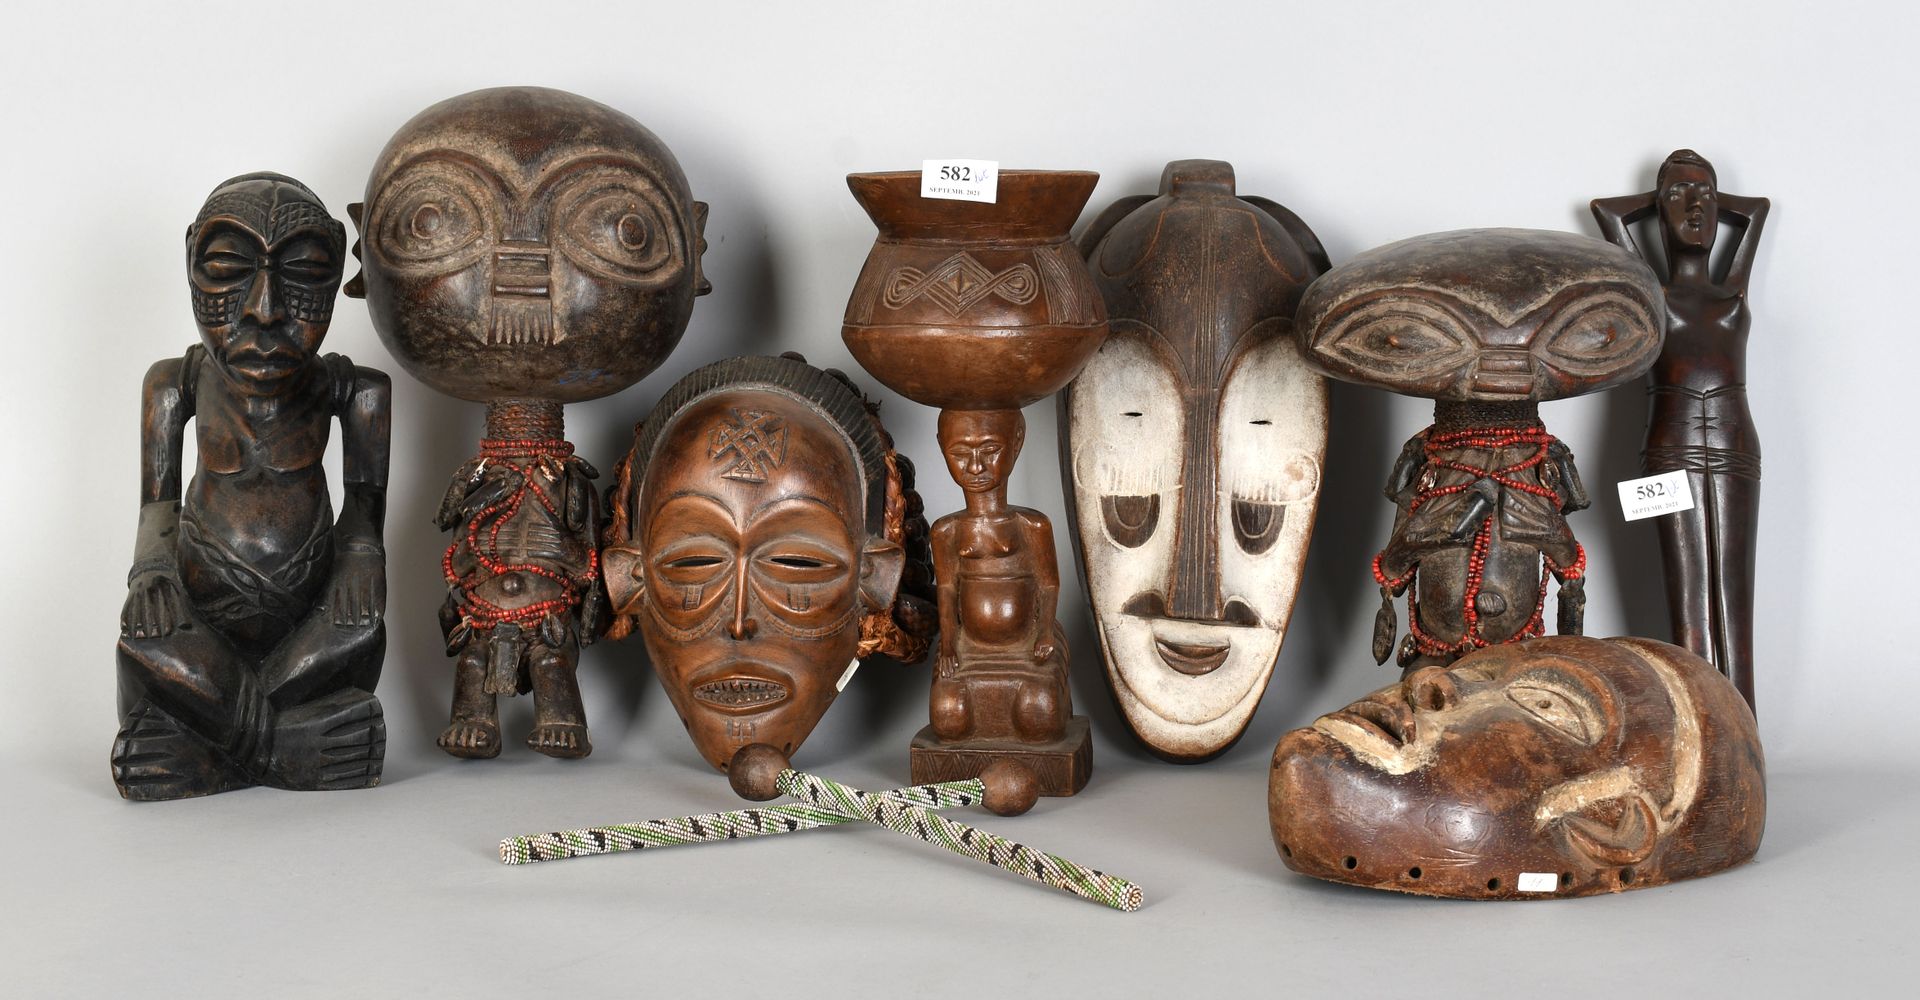 Null Africana

Lote de estatuas, máscaras y fetiches